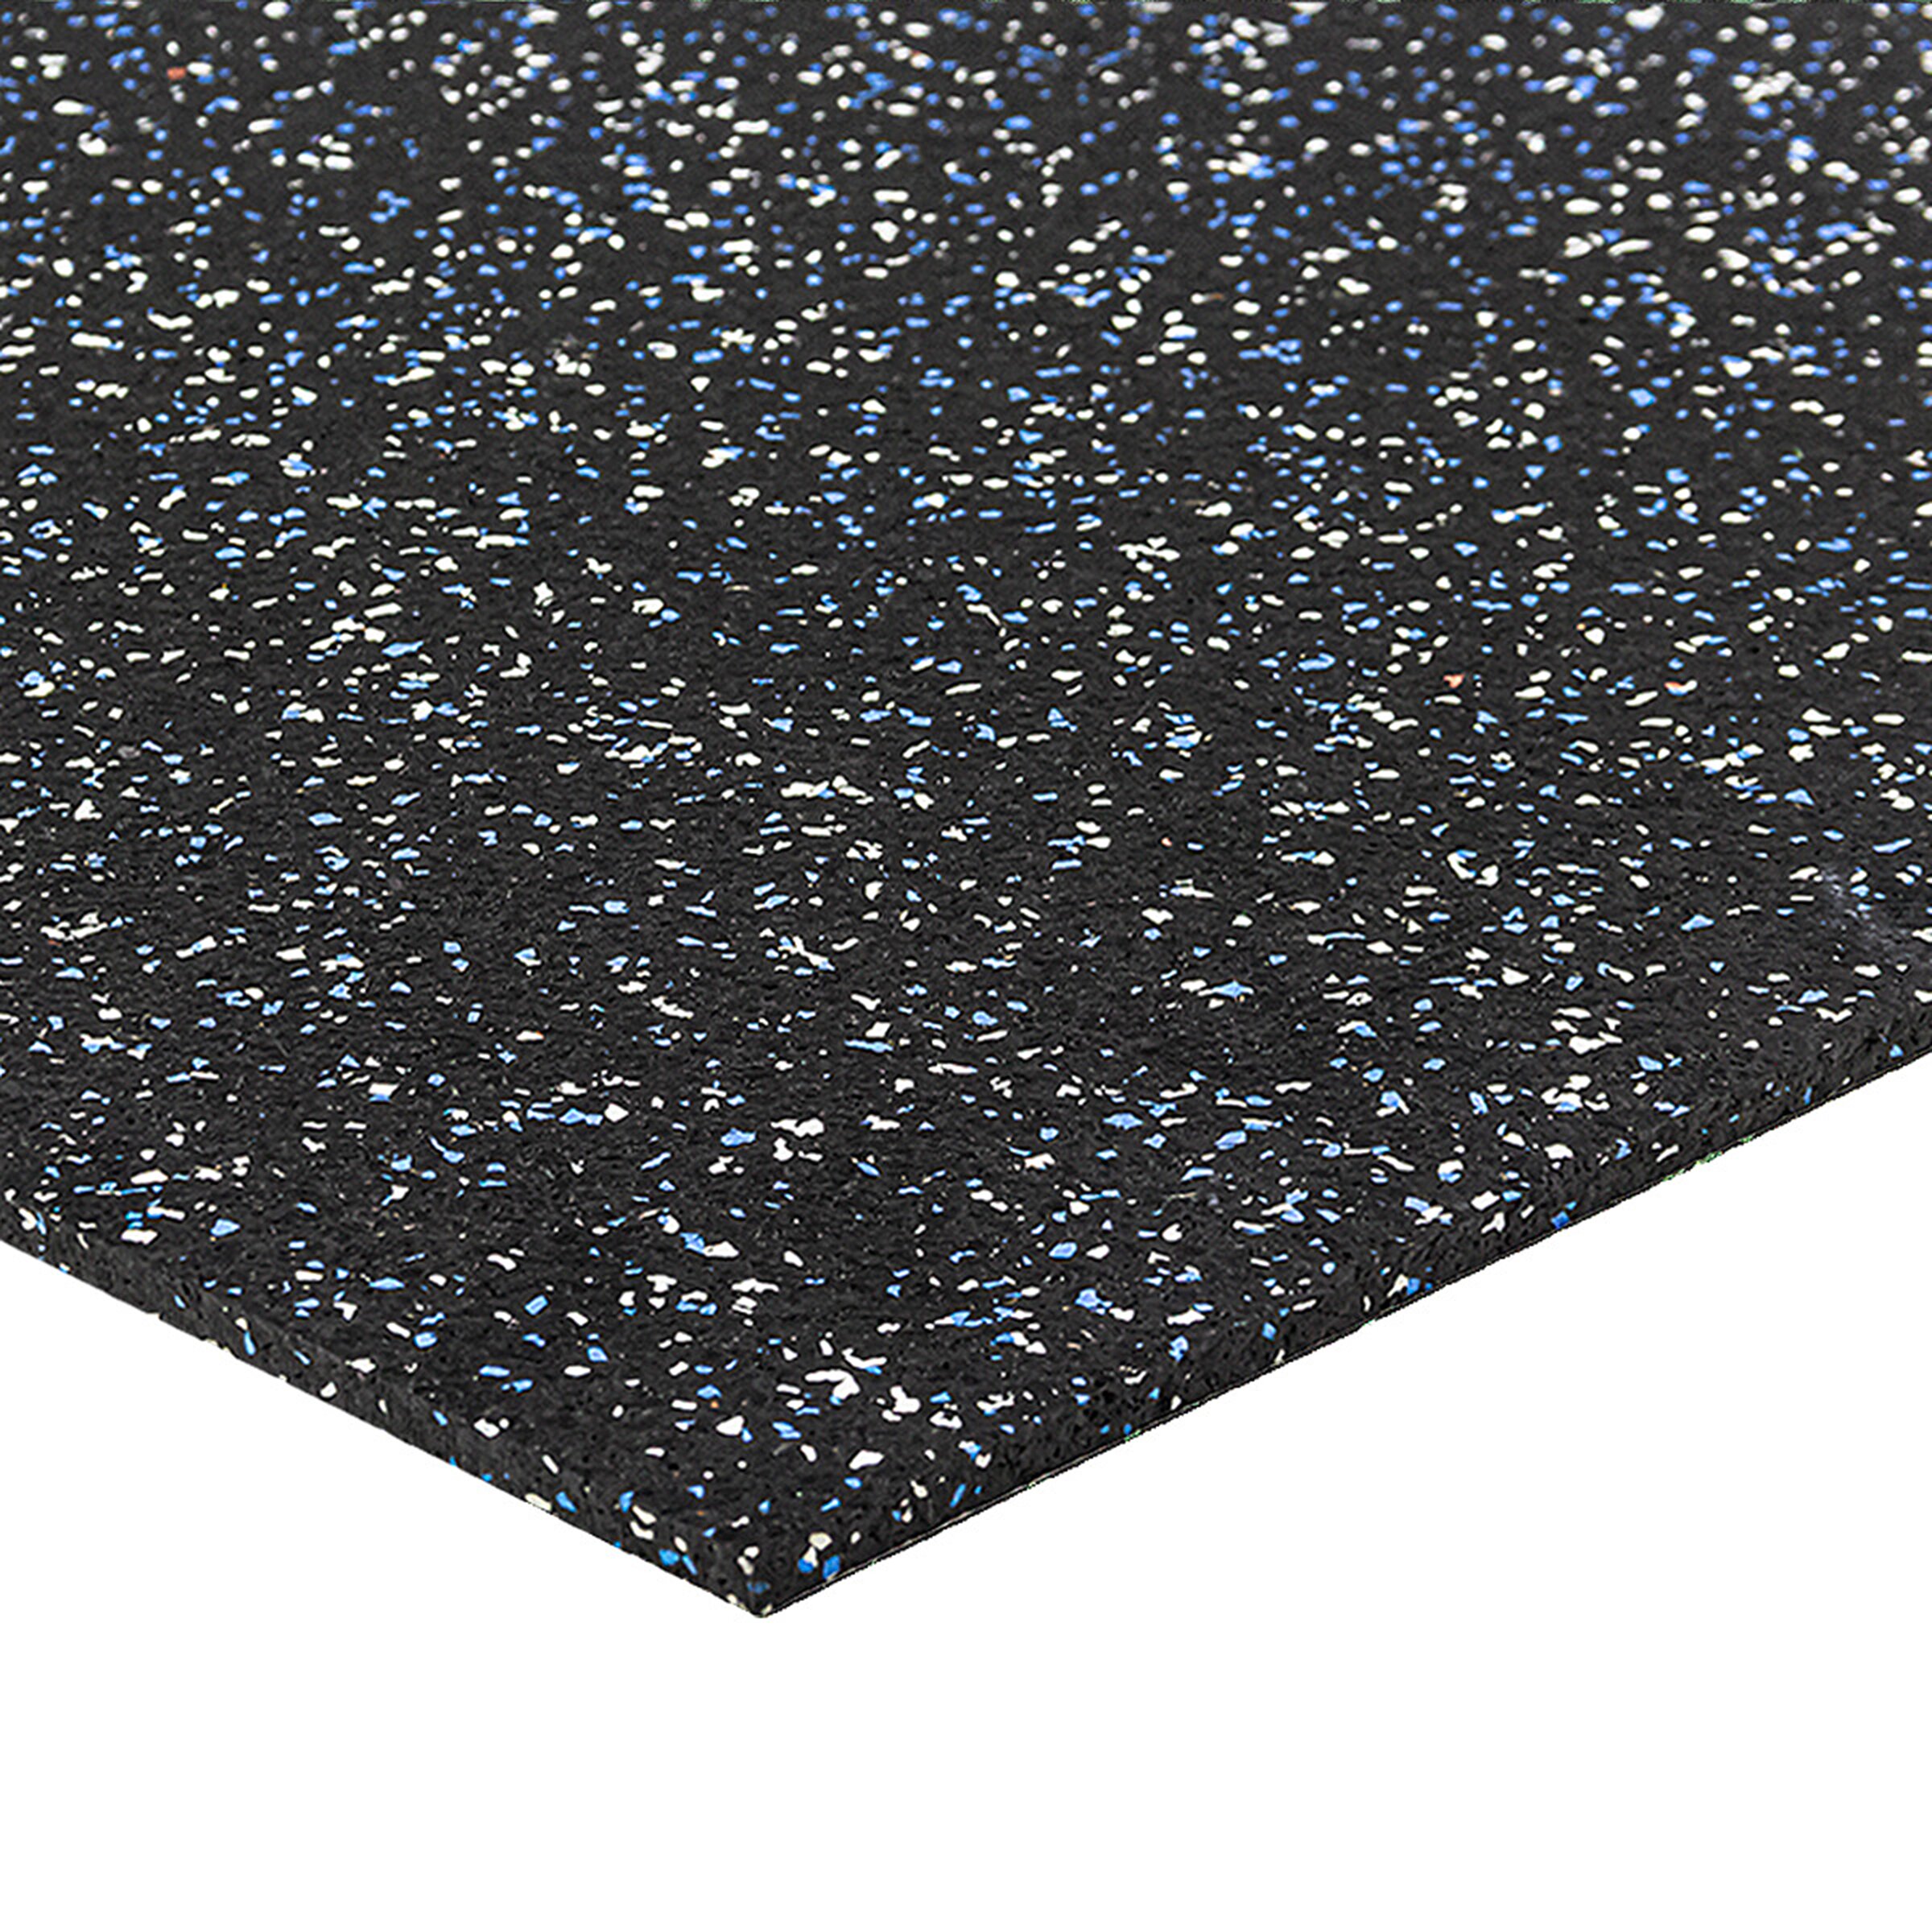 Čierno-bielo-modrá podlahová guma (puzzle - okraj) FLOMA FitFlo SF1050 - dĺžka 50 cm, šírka 50 cm, výška 0,8 cm